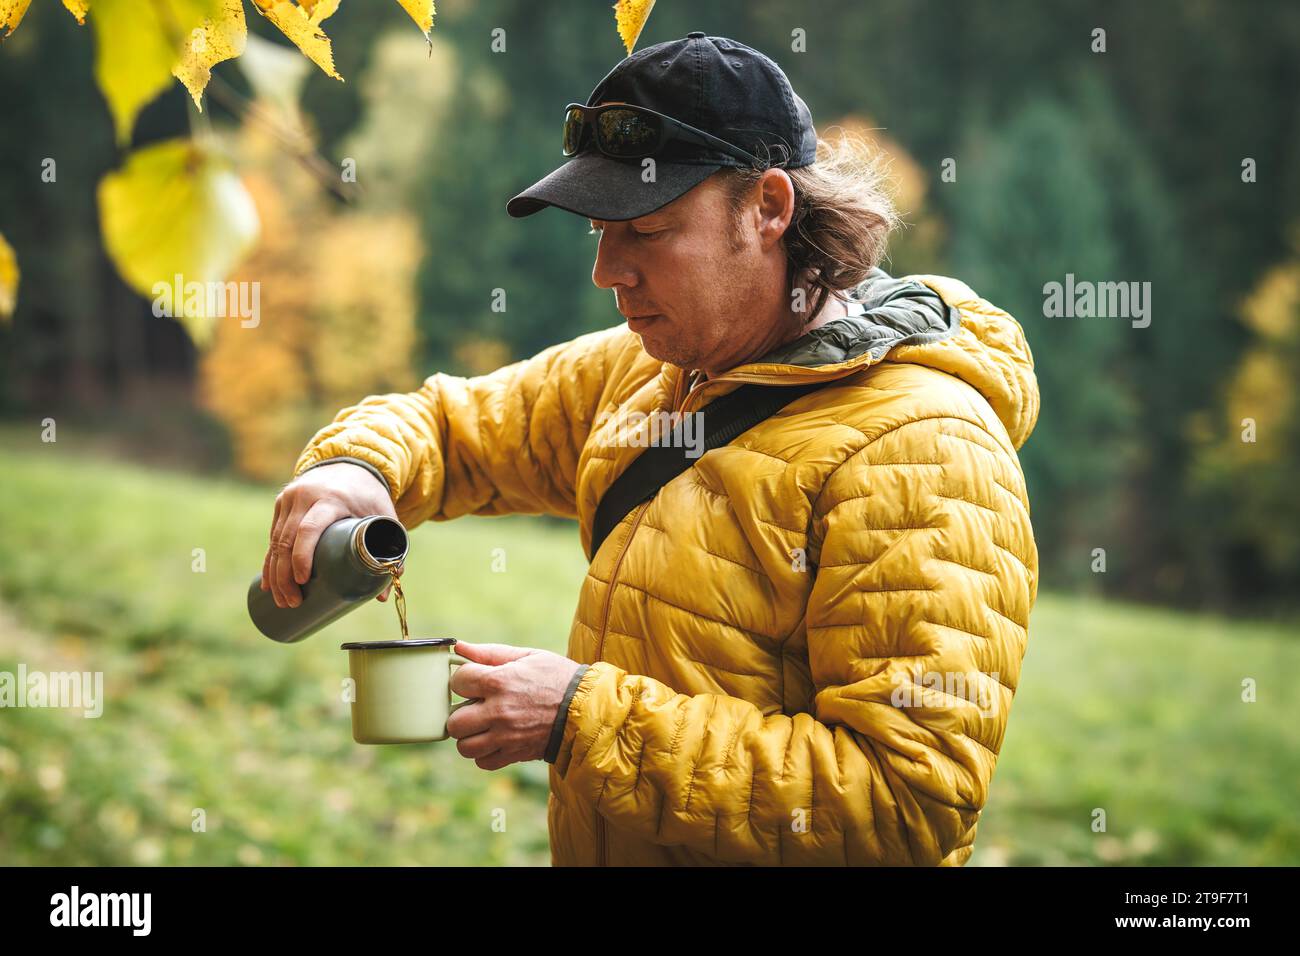 Ein Wanderer mit gelber Jacke gießt heißes Getränk aus der Thermoskanne in einen Reisebecher im Herbstwald. Erholung und Erfrischung bei Wanderungen im Freien Stockfoto